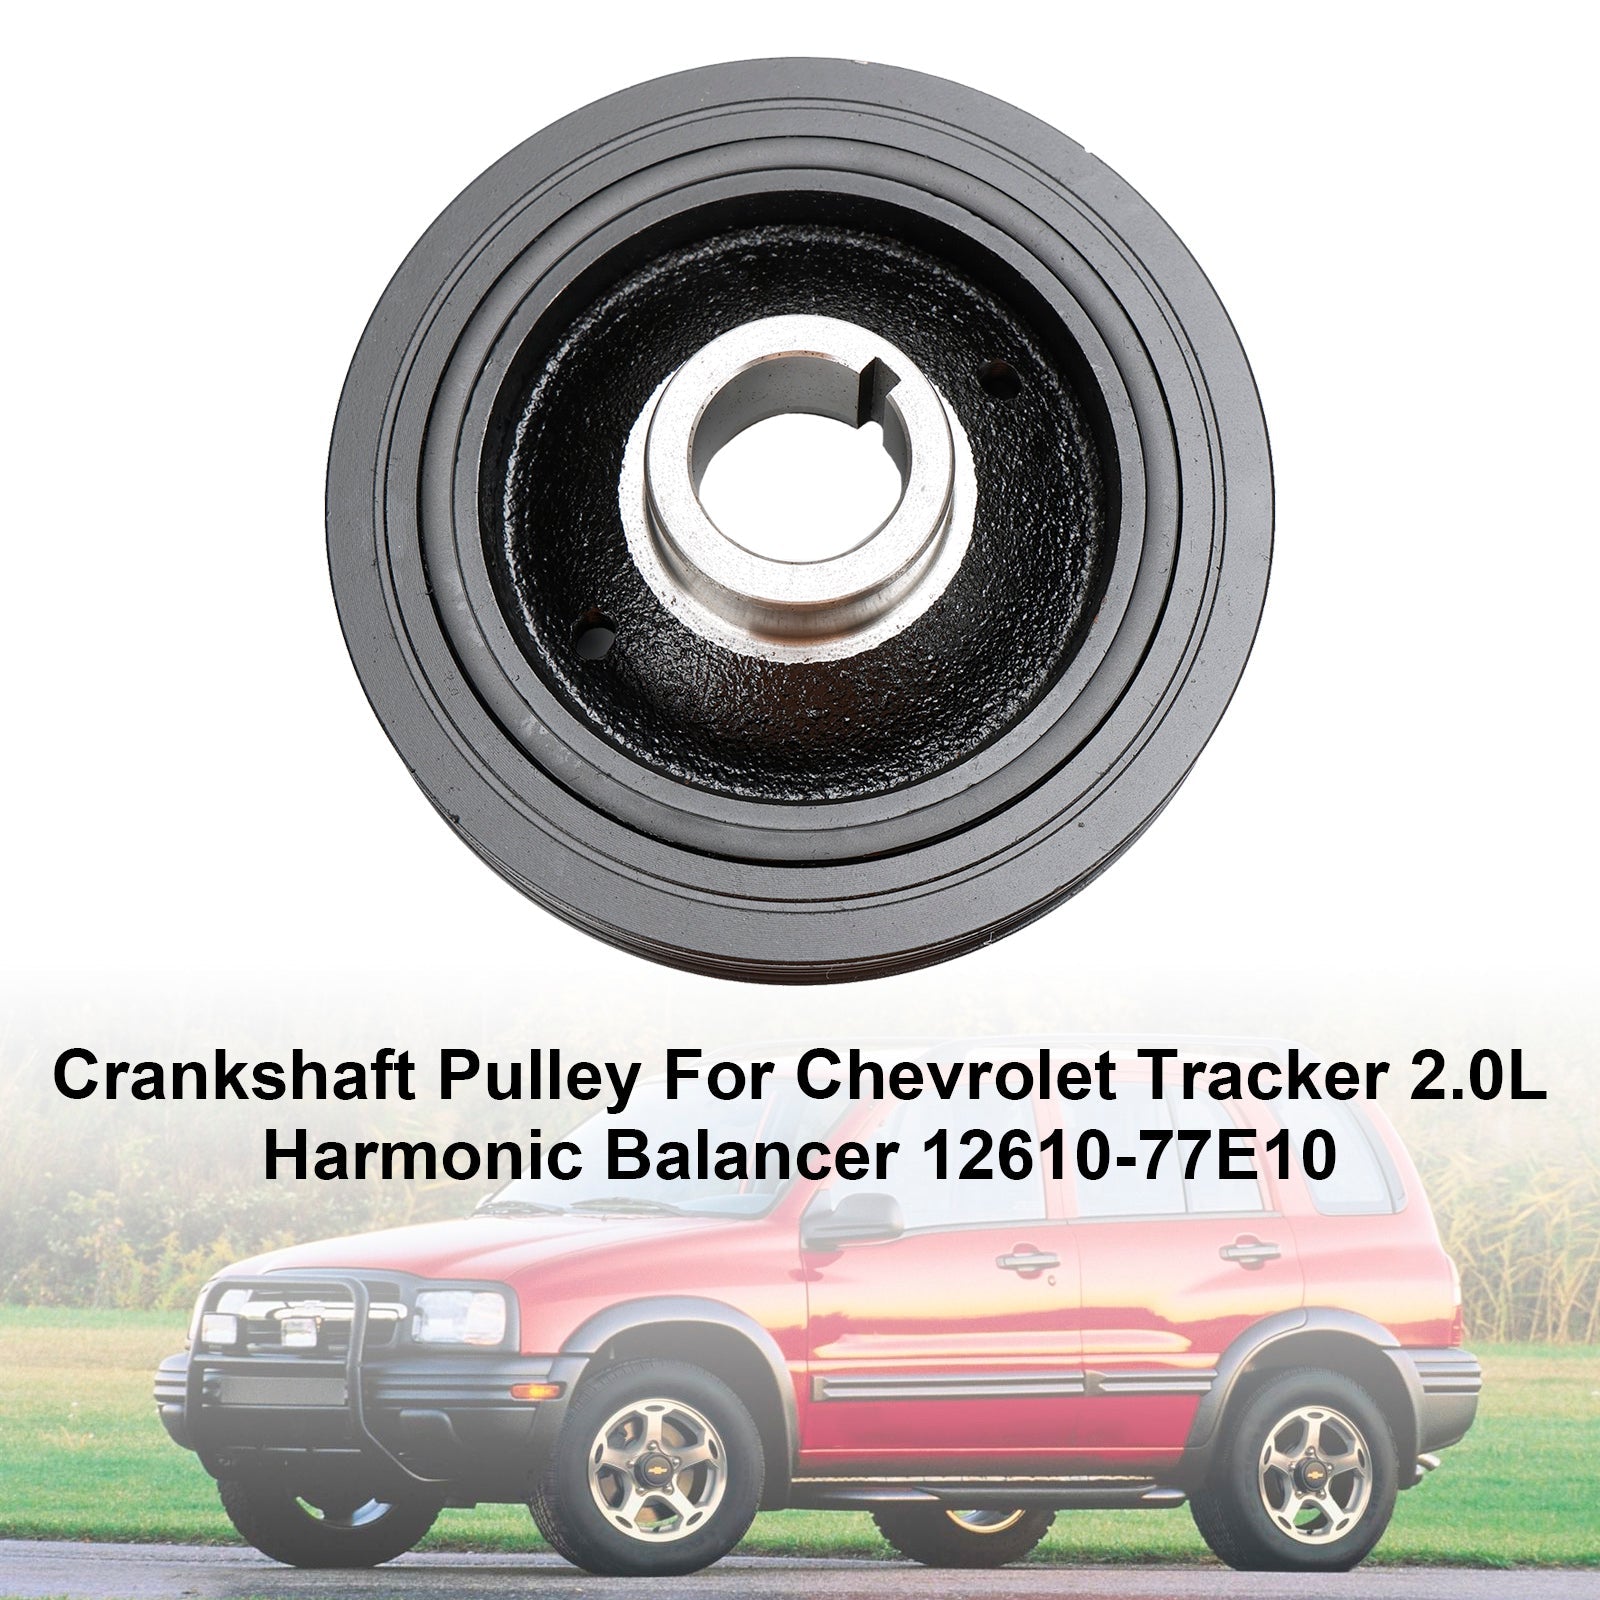 Poulie de vilebrequin pour Chevrolet Tracker 2.0L équilibreur harmonique 12610-77E10 Fedex Express